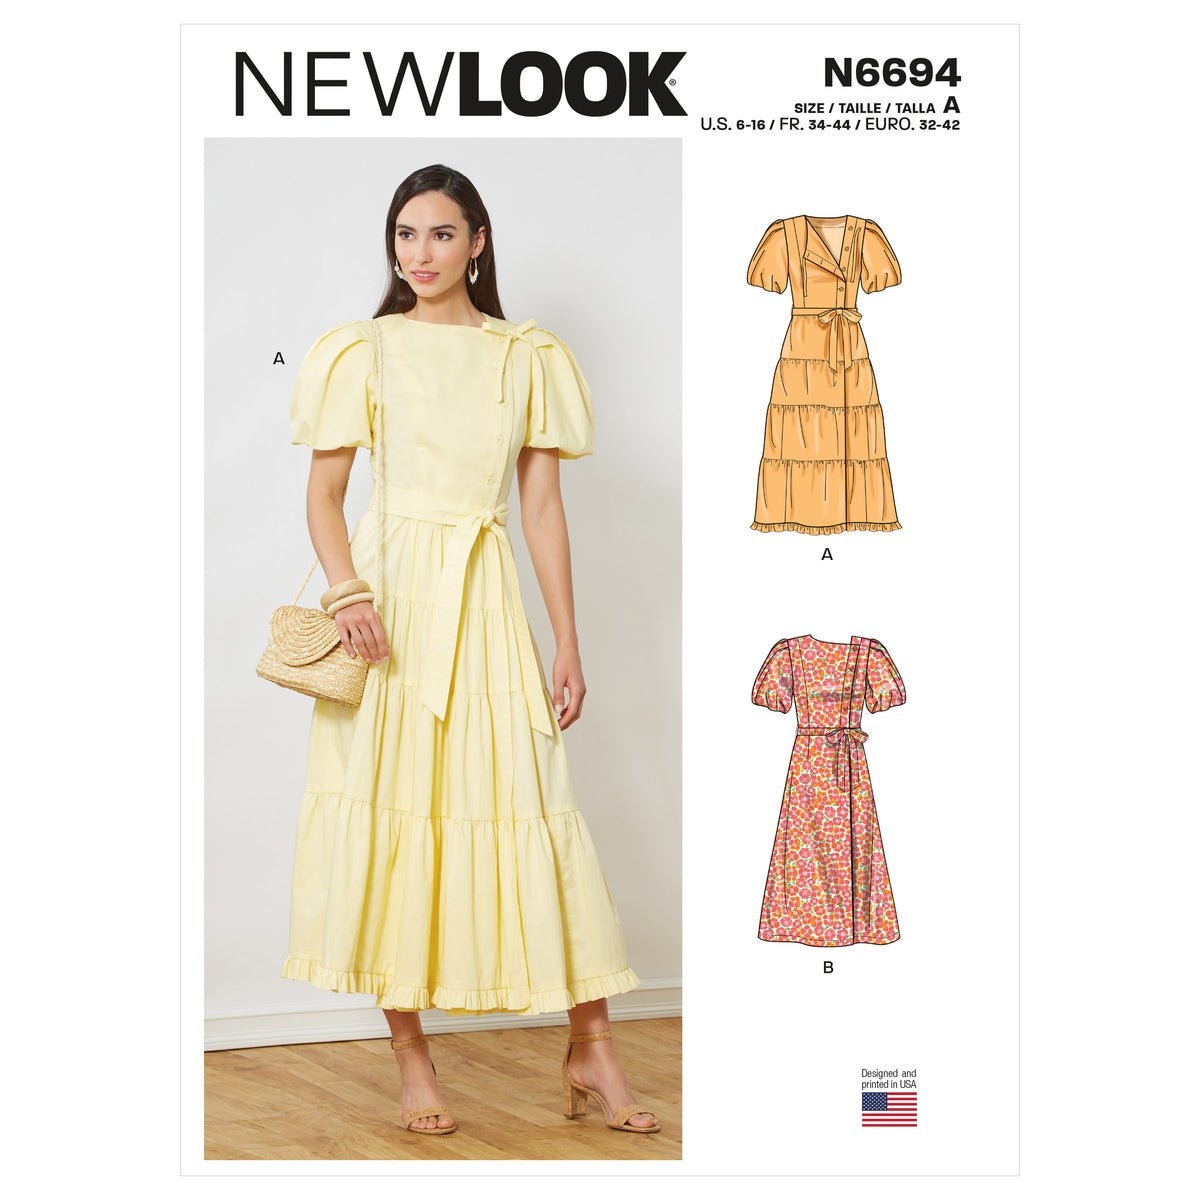 New Look Sewing Pattern 6694 - Pound Fabrics